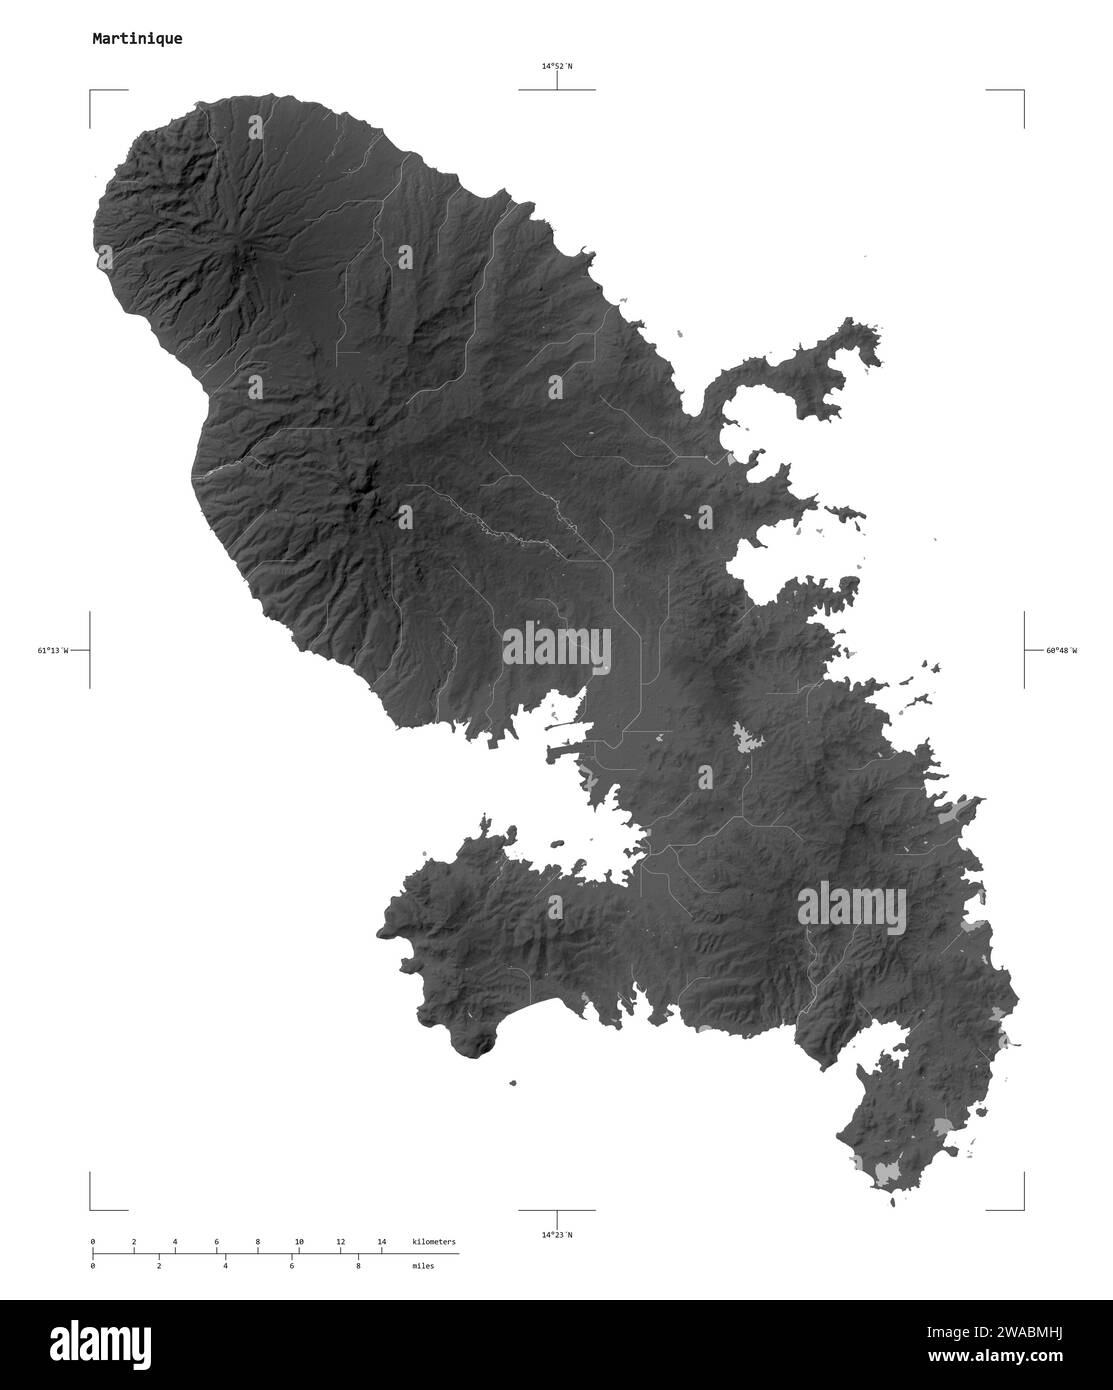 Forme d'une carte d'altitude en niveaux de gris avec les lacs et rivières de la Martinique, avec échelle de distance et coordonnées de la frontière de la carte, isolé sur blanc Banque D'Images